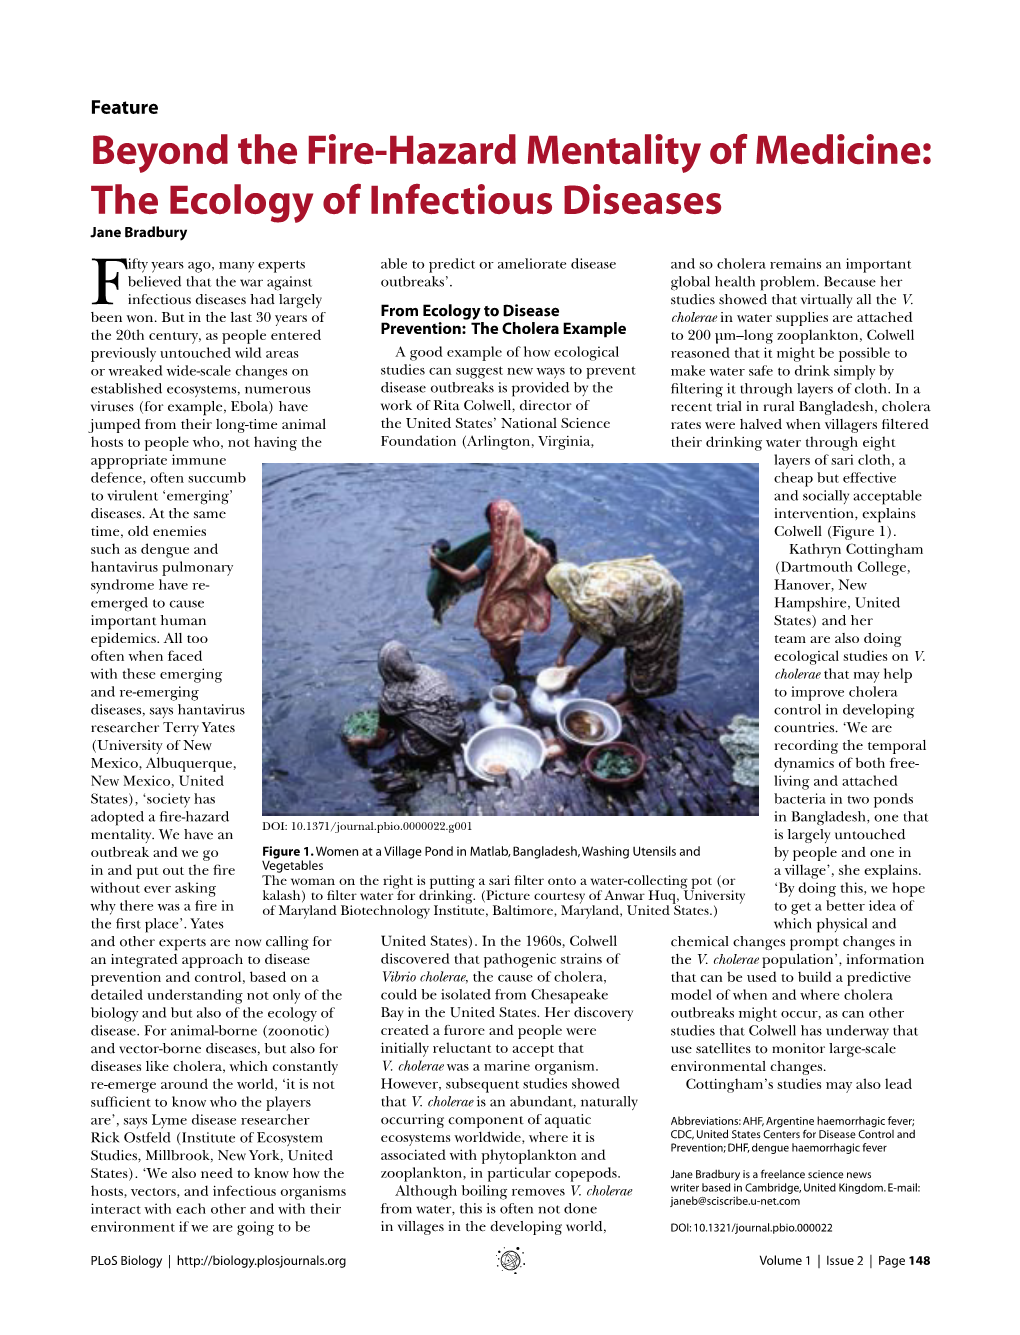 The Ecology of Infectious Diseases Jane Bradbury